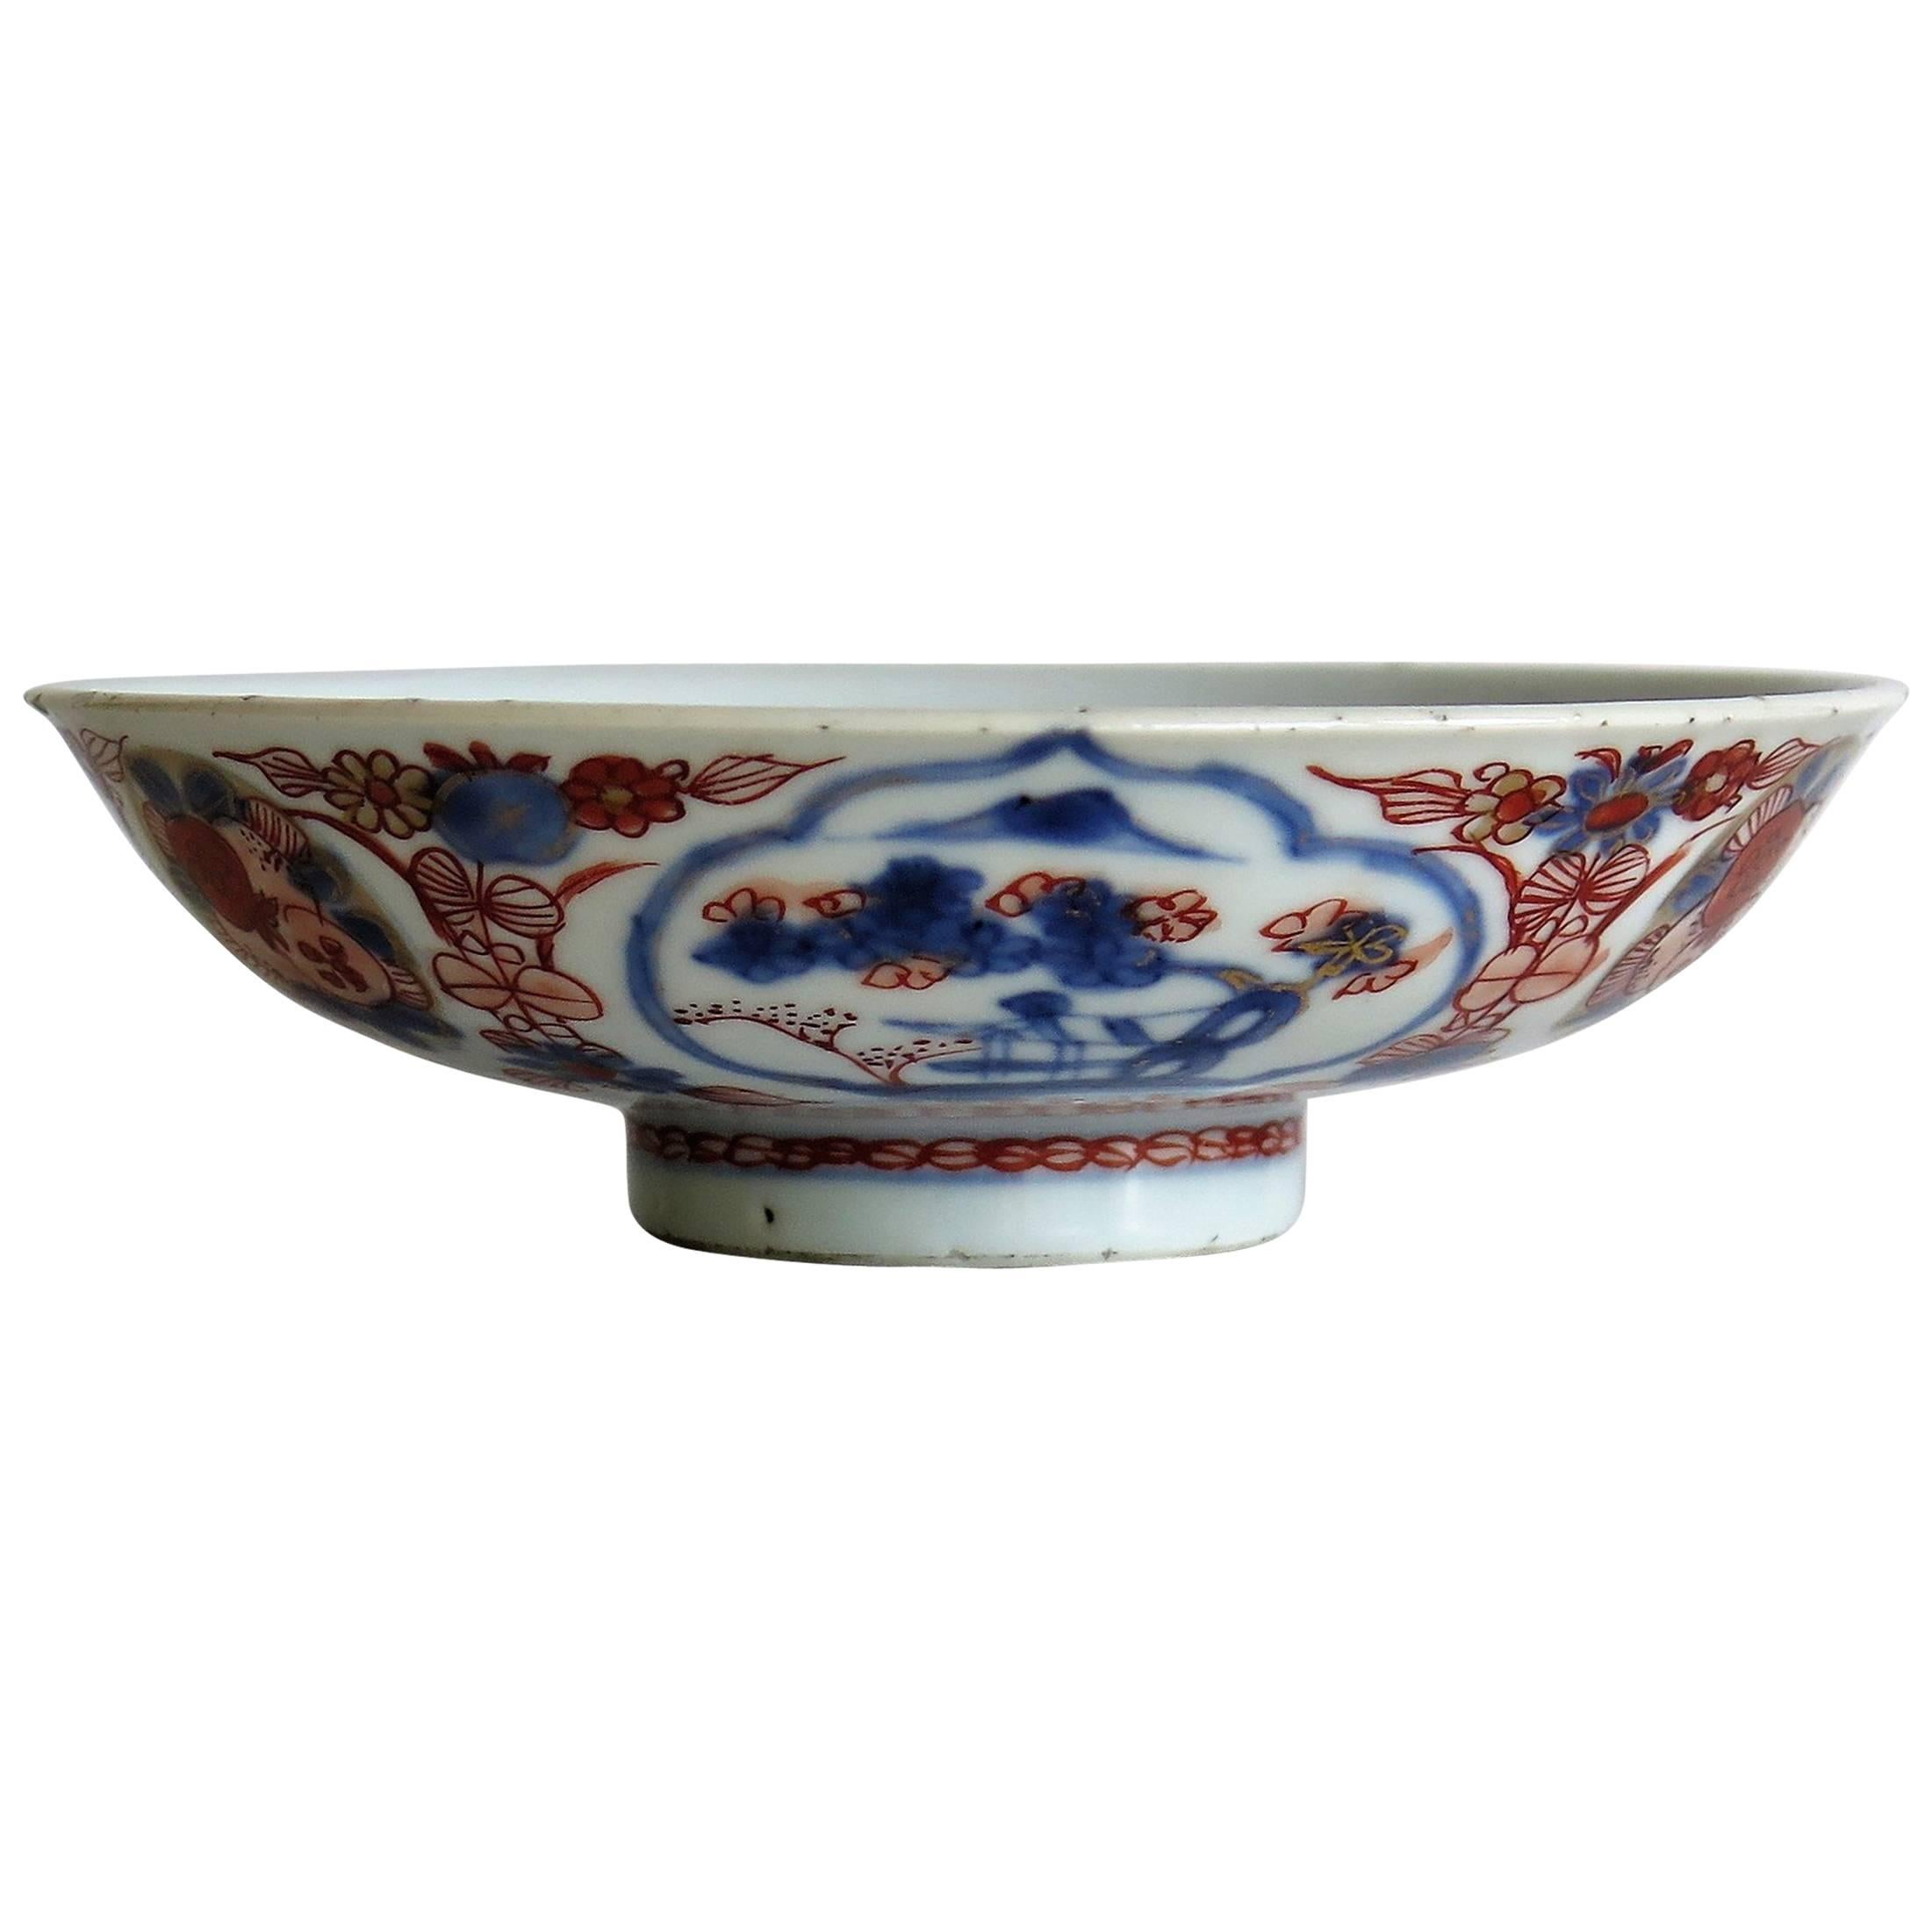 Late 17th Century Chinese Porcelain Bowl, Qing Kangxi Period Circa 1700